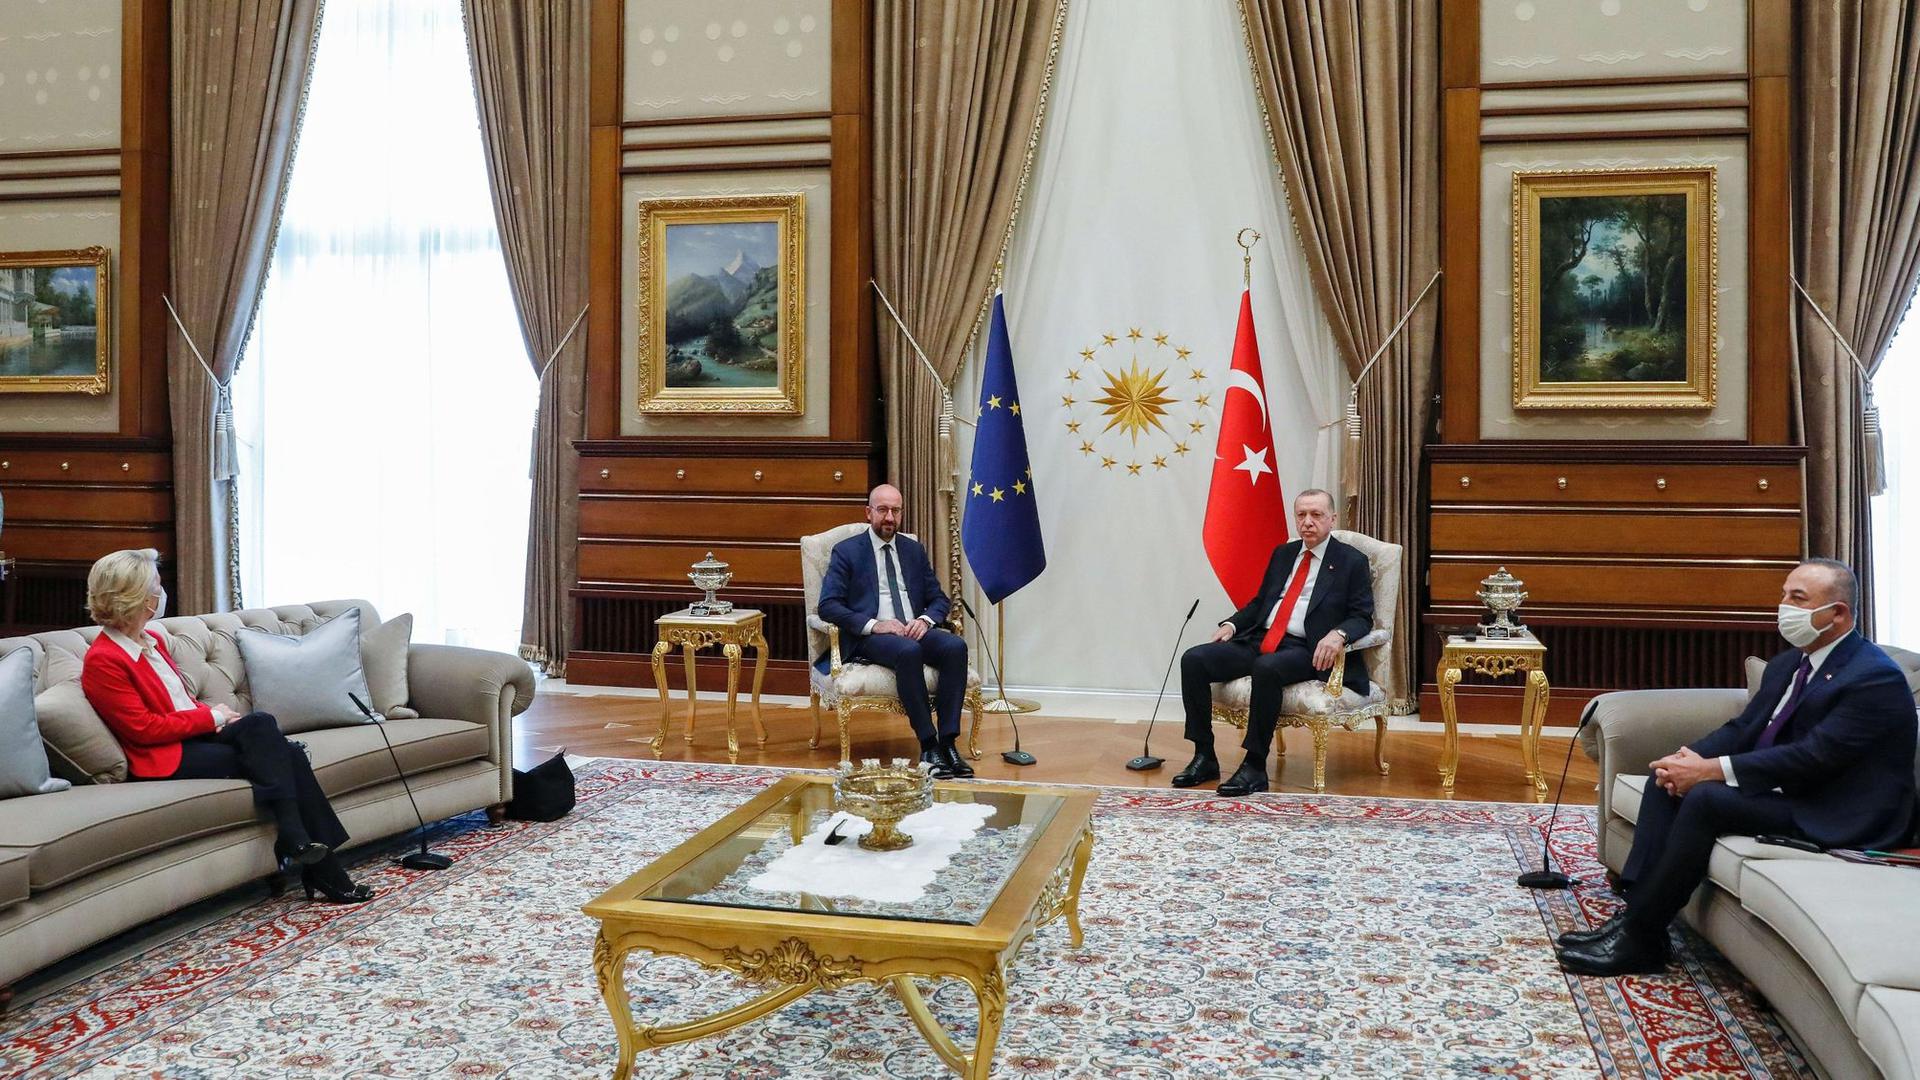 Dieses vom Europäischen Rat zur Verfügung gestellte Foto zeigt den türkischen Präsidenten Recep Tayyip Erdogan (2.v.r) und den türkischen Außenminister Mevlut Cavusoglu (r) während eines Treffens mit EU-Kommissionspräsidentin Ursula von der Leyen (l) und EU-Ratspräsident Charles Michel.